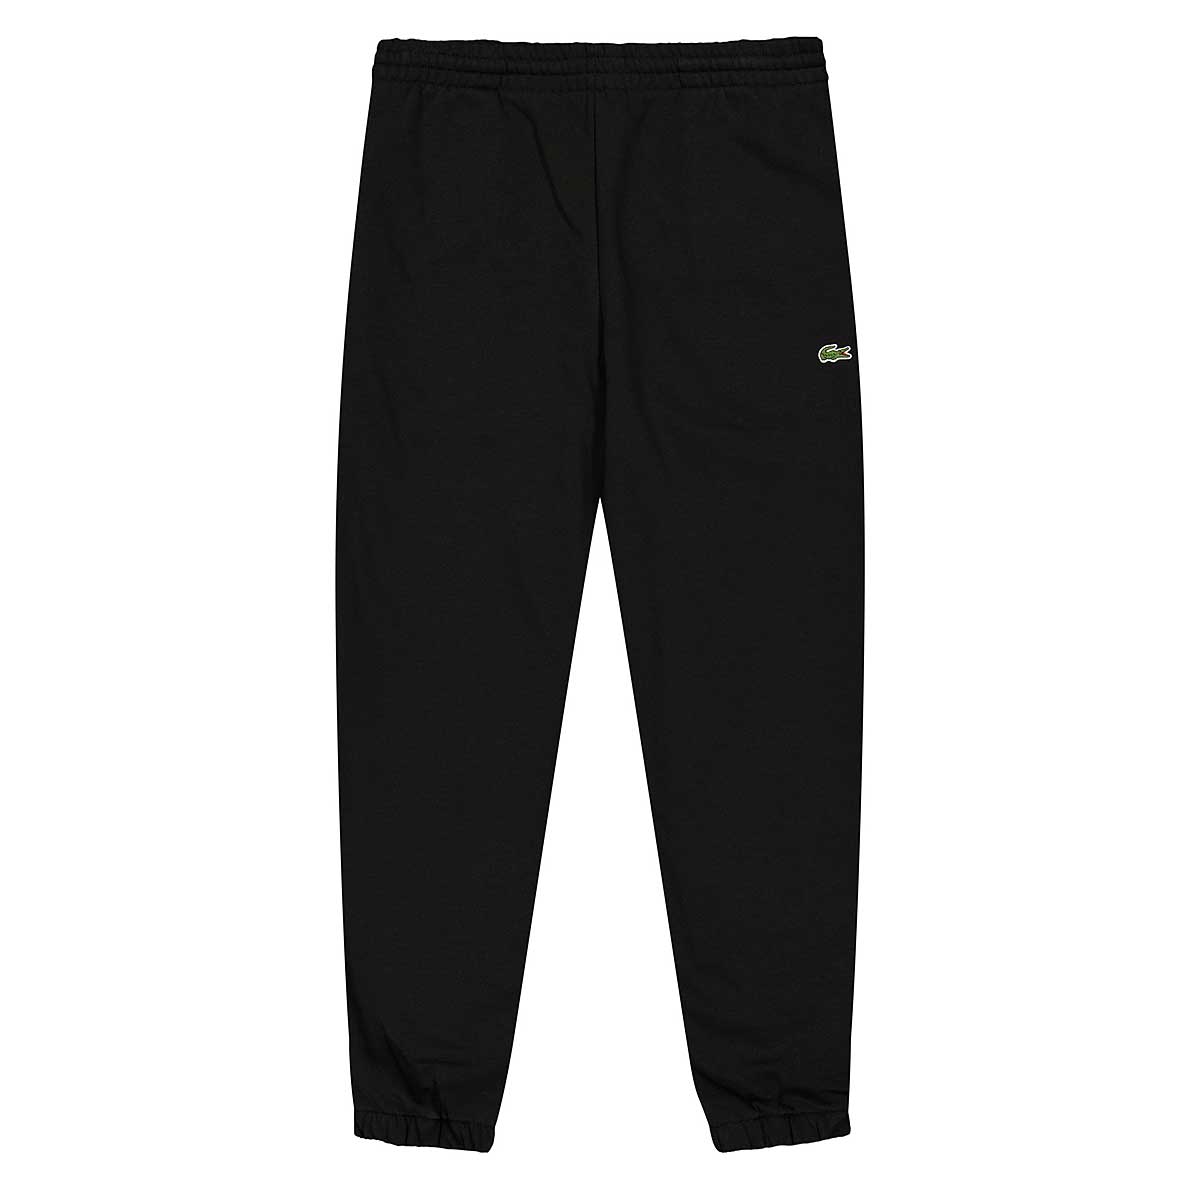 Lacoste Sweatpants, Black/Black